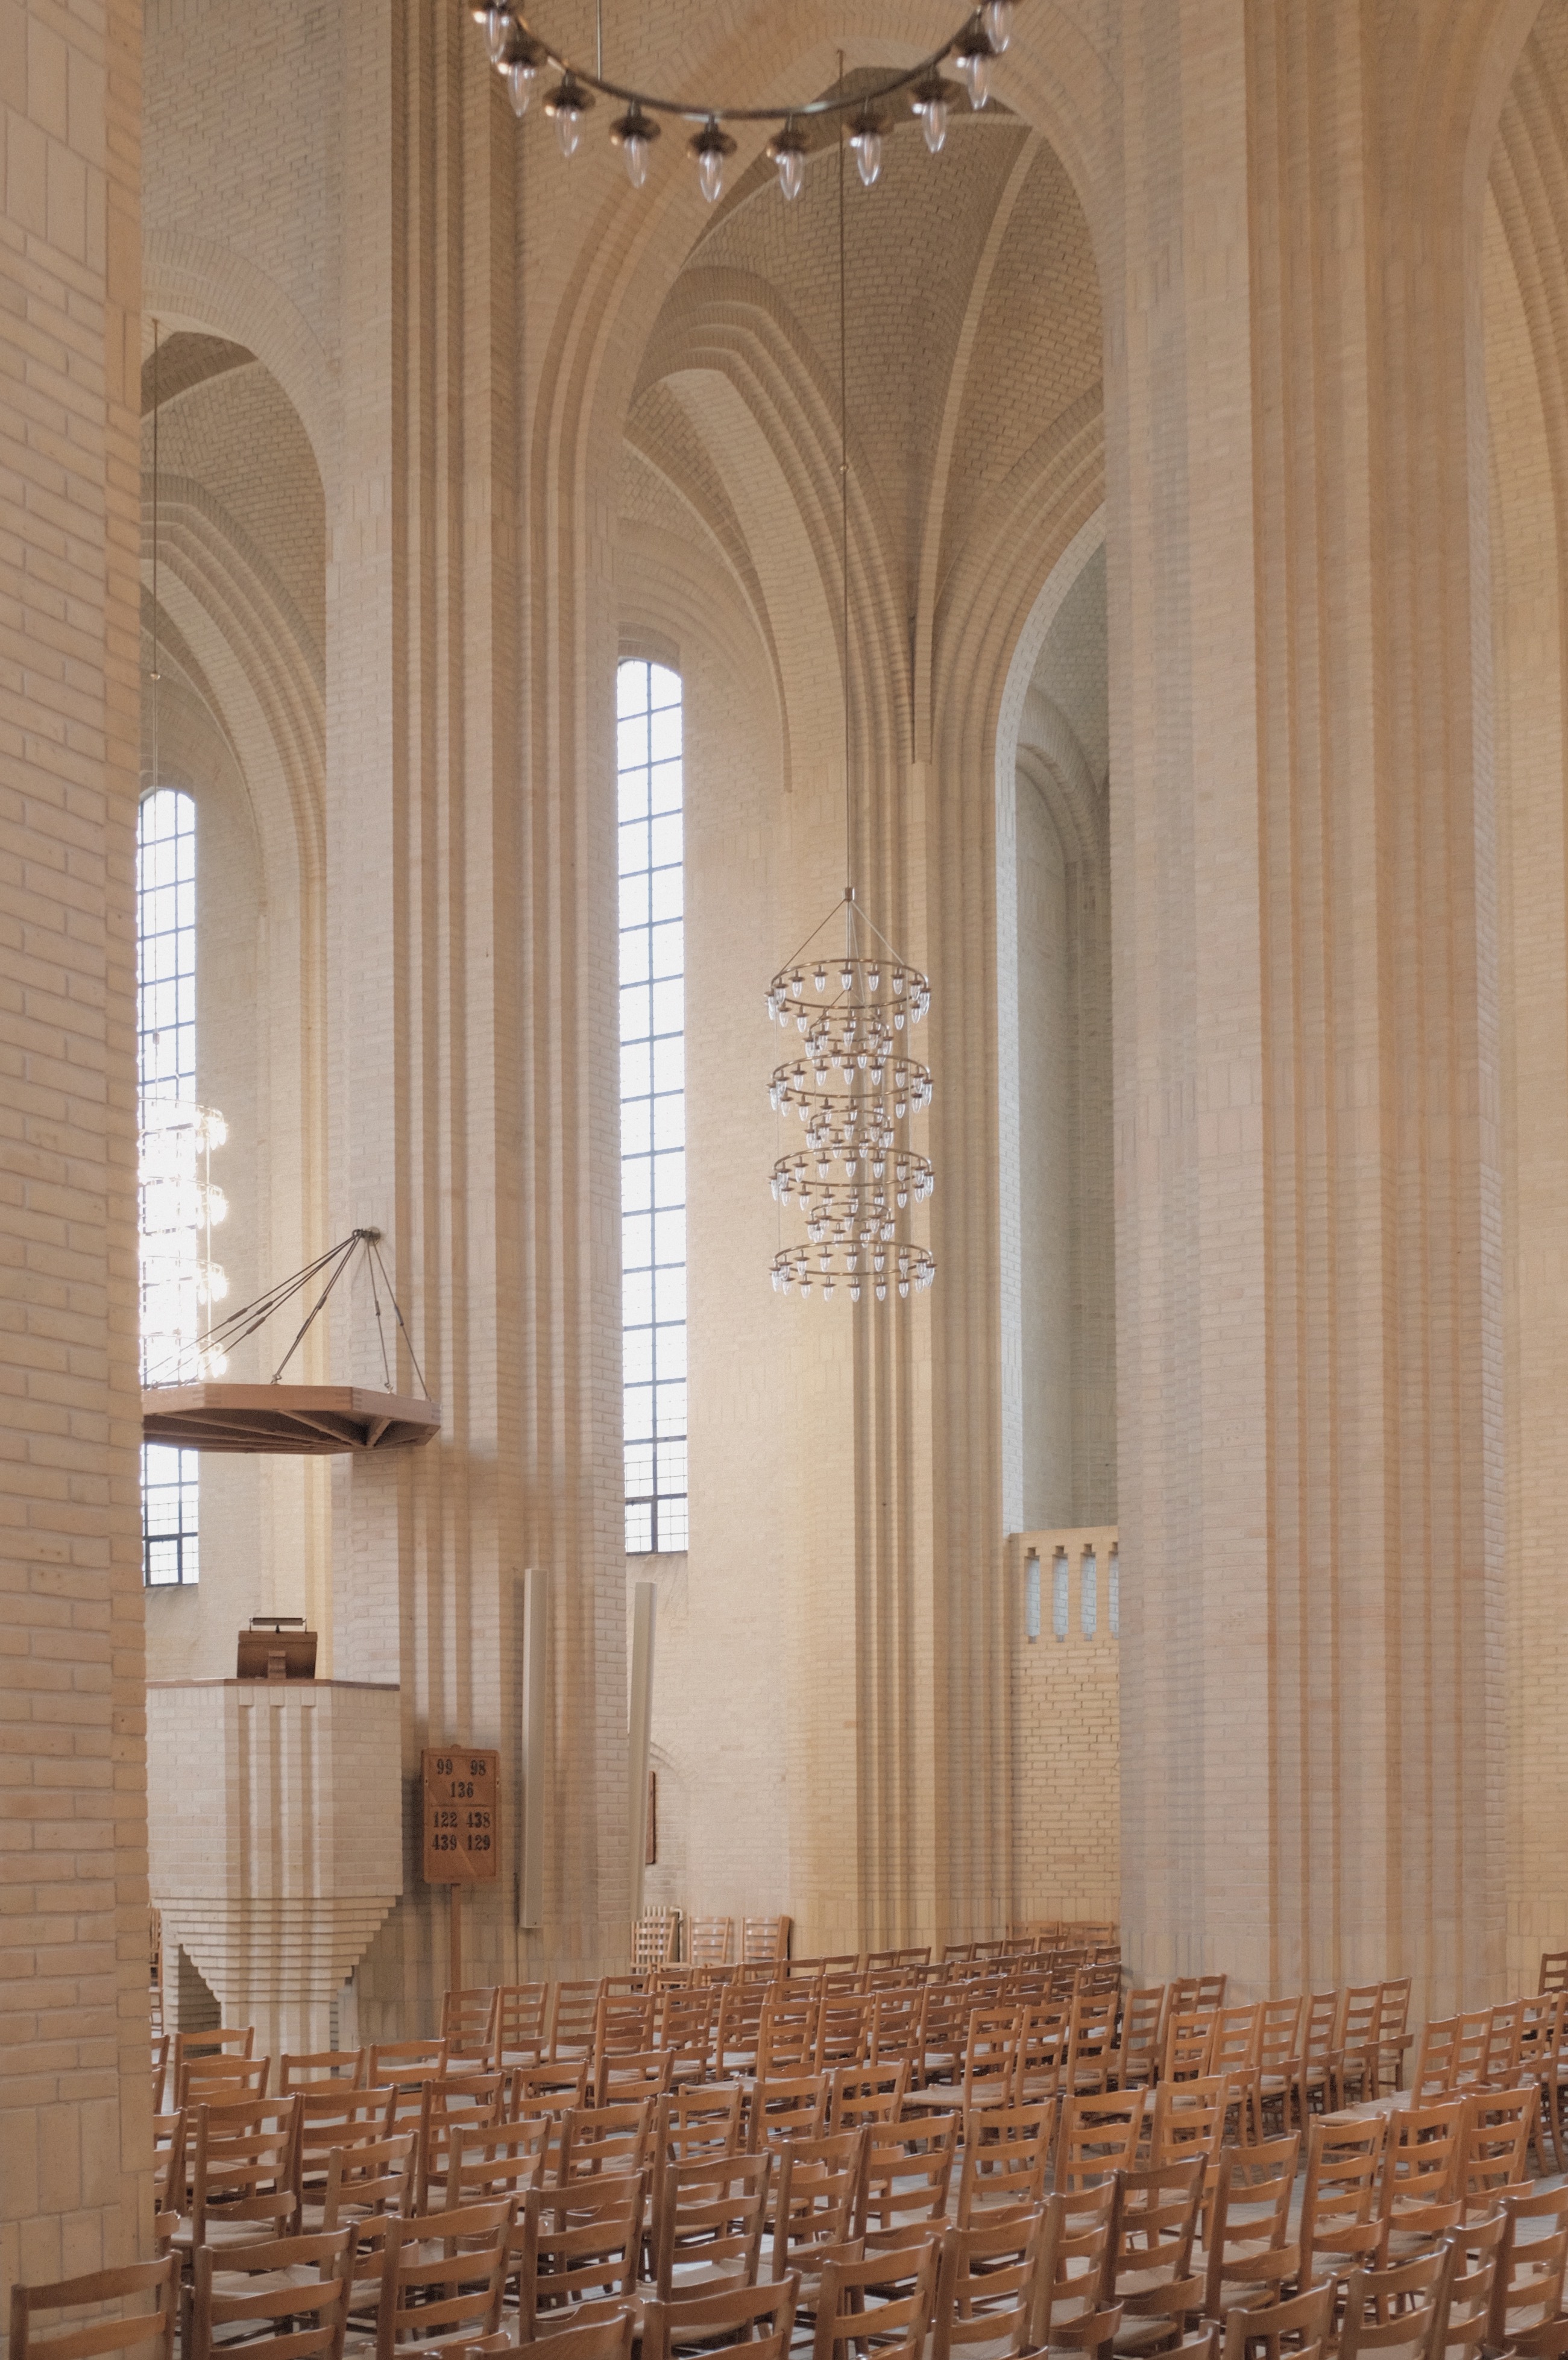 哥本哈根教堂建筑欣赏 - 视觉同盟(VisionUnion.com)